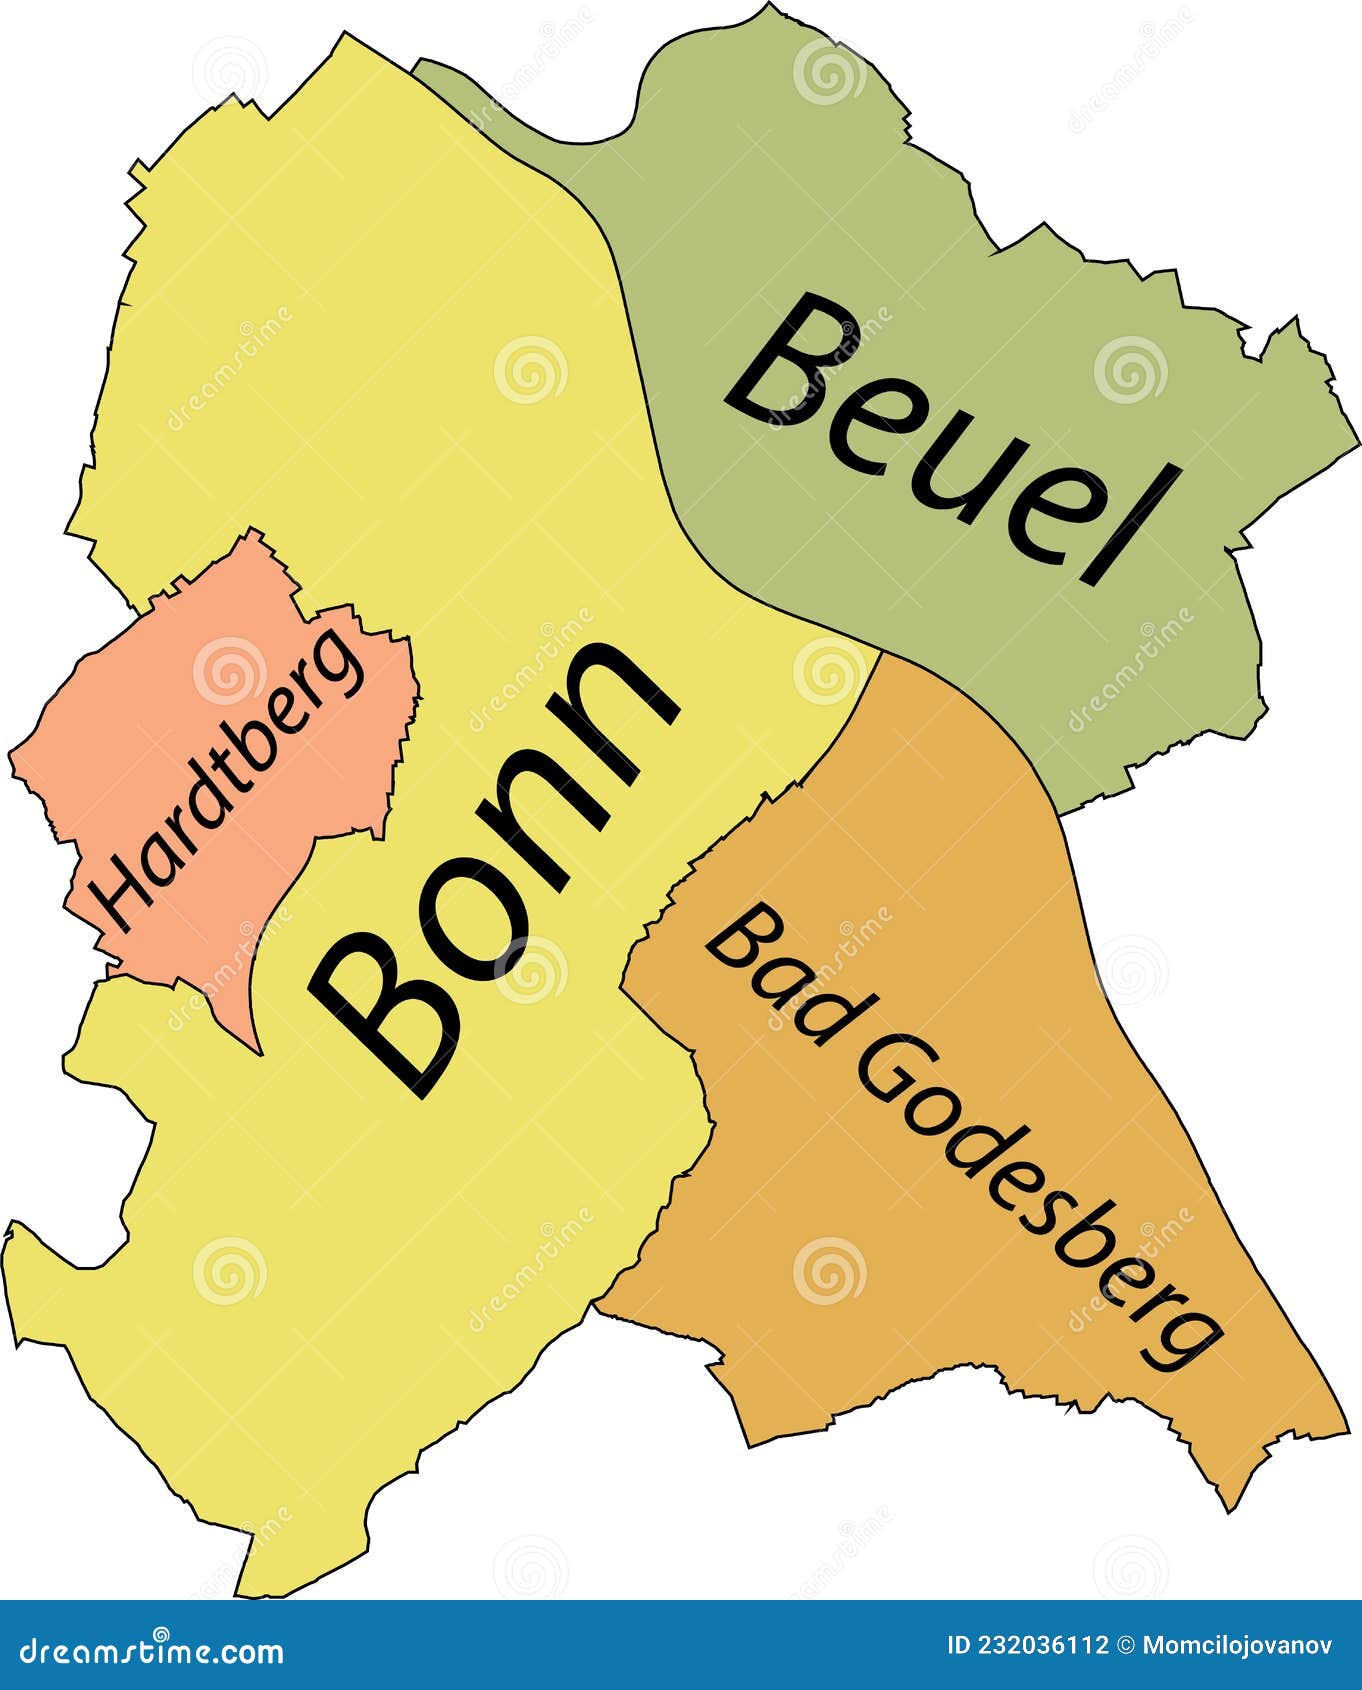 BONN MAP 